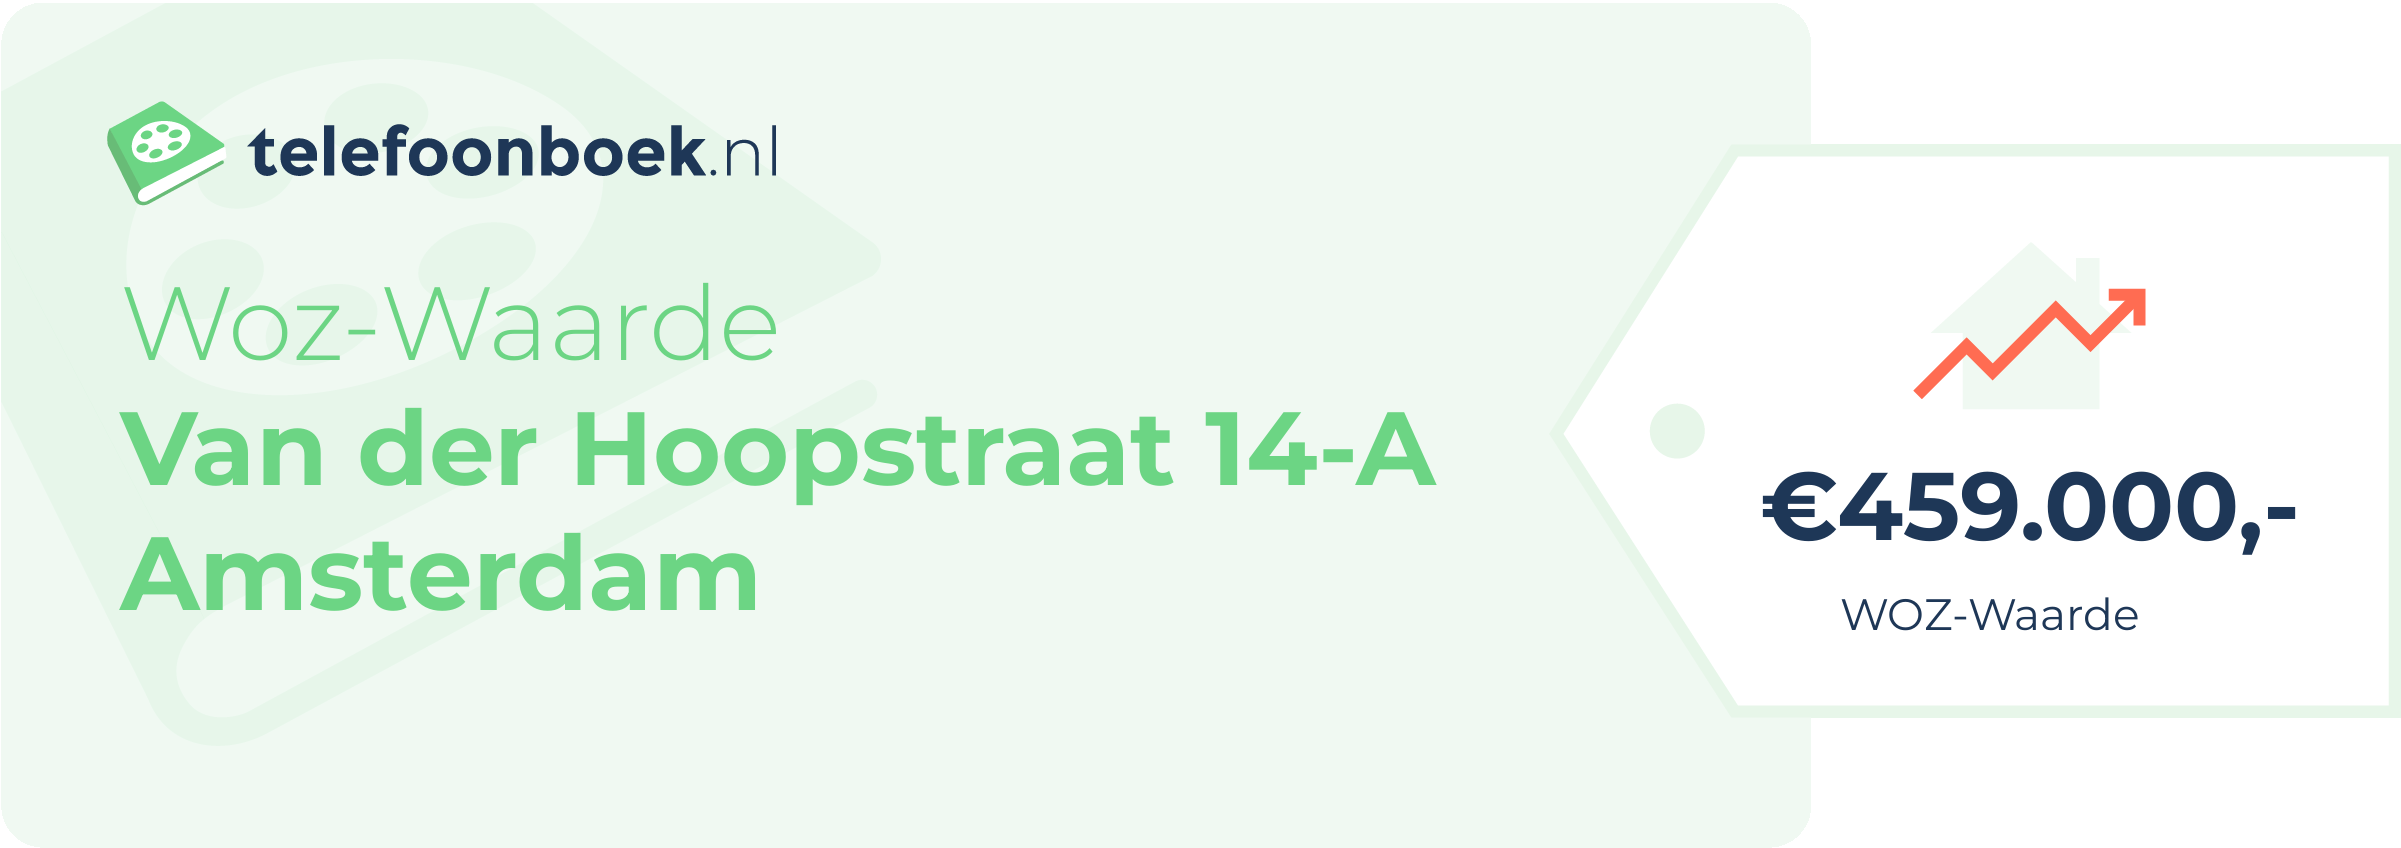 WOZ-waarde Van Der Hoopstraat 14-A Amsterdam